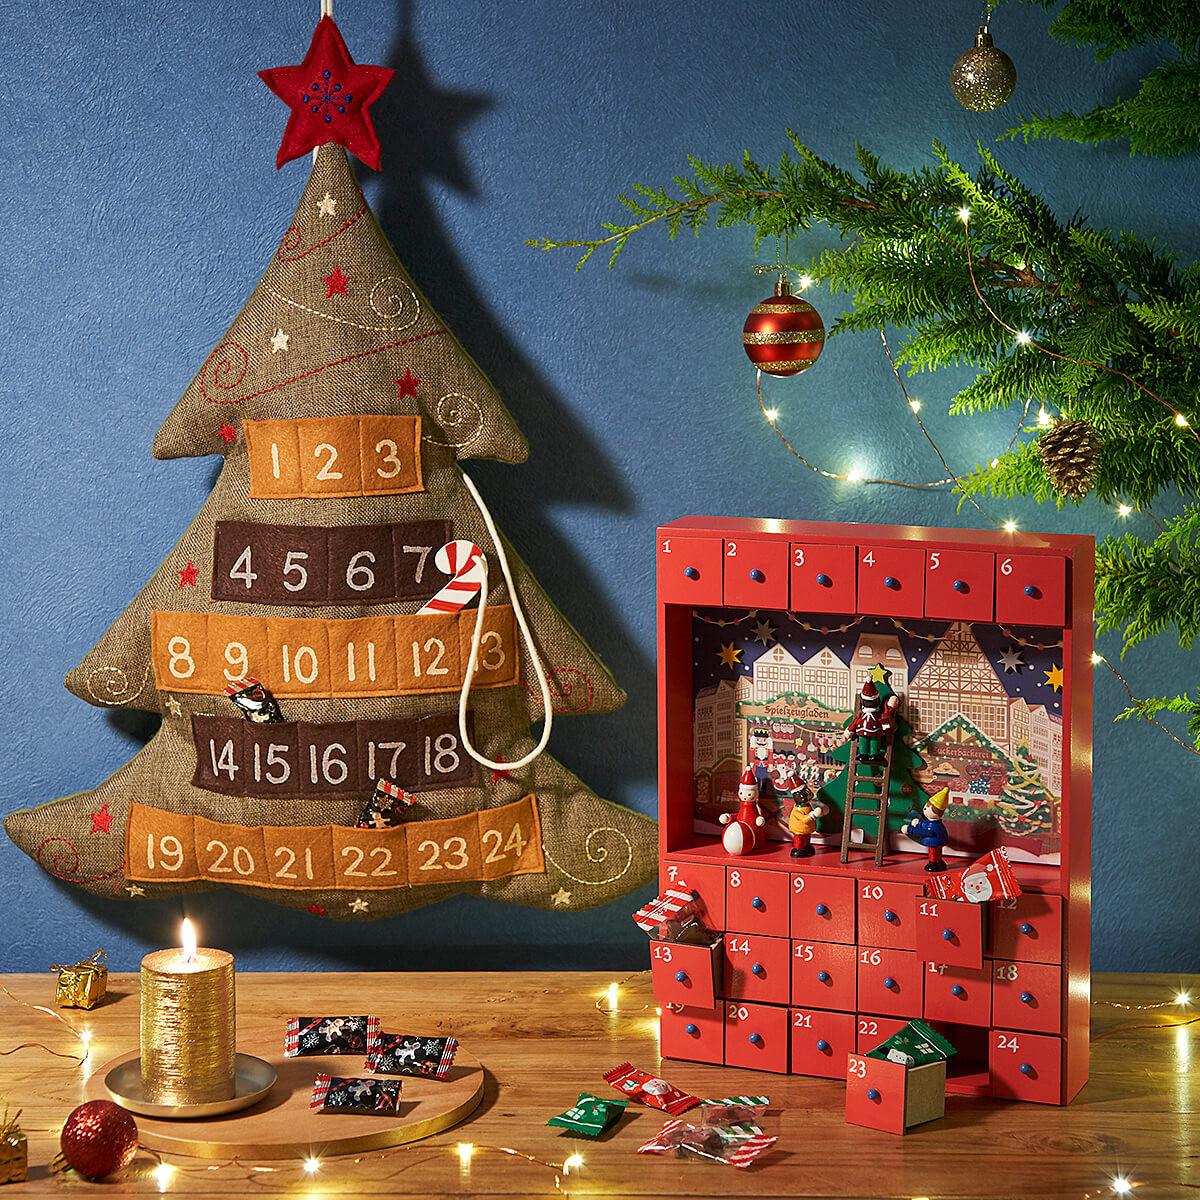 カルディ新商品 19年クリスマス限定 カウントダウンカレンダーからお菓子まで0種類以上